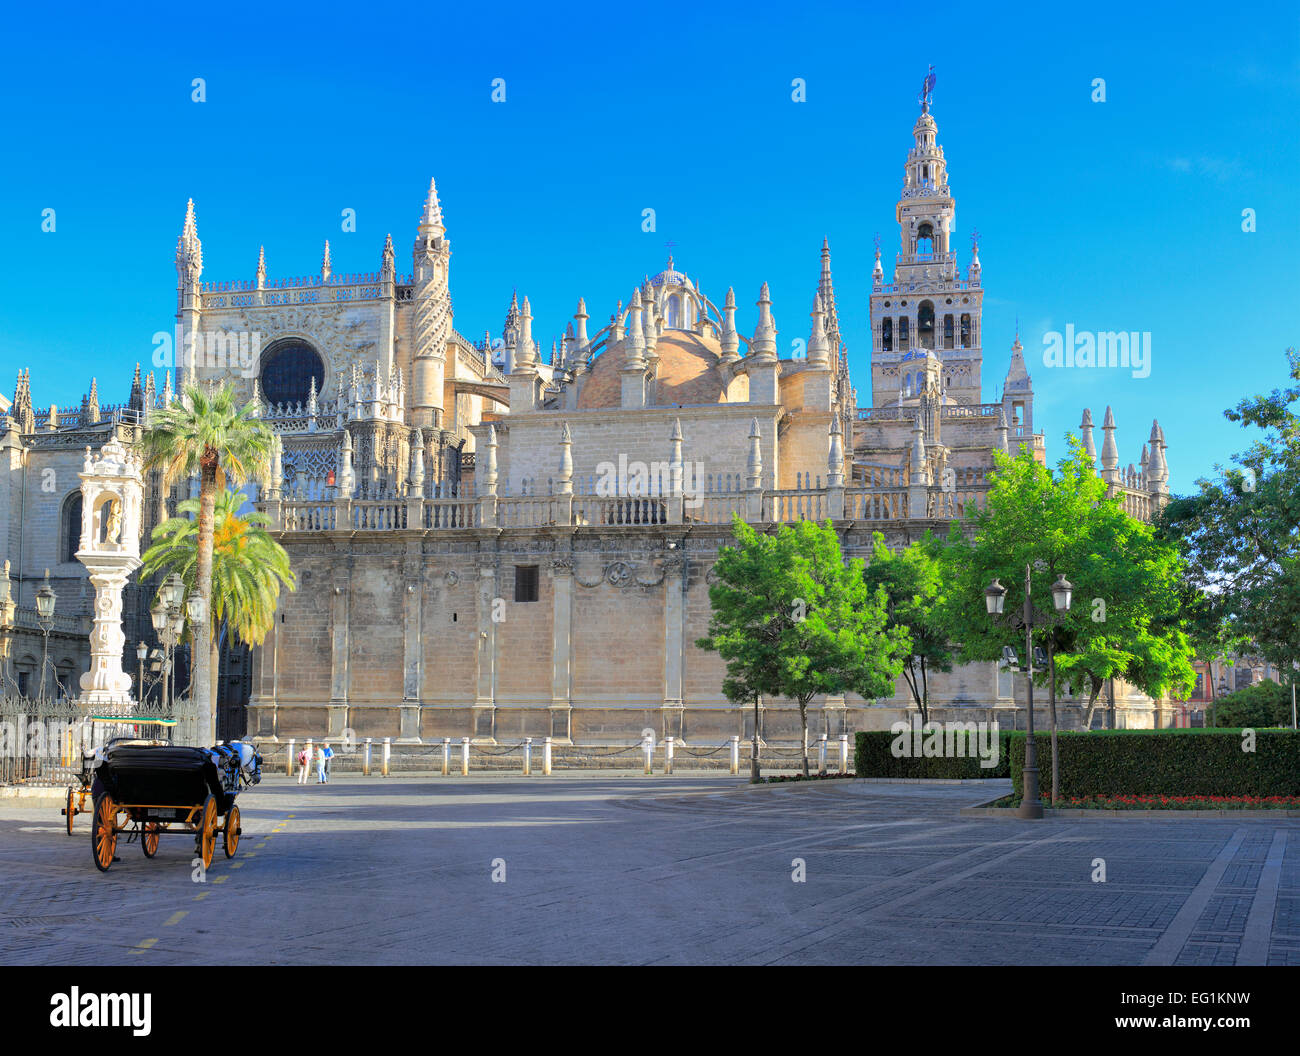 Place, la cathédrale Sainte Marie de l'Voir (Catedral de Santa Maria de la Sede), Séville, Andalousie, Espagne Banque D'Images